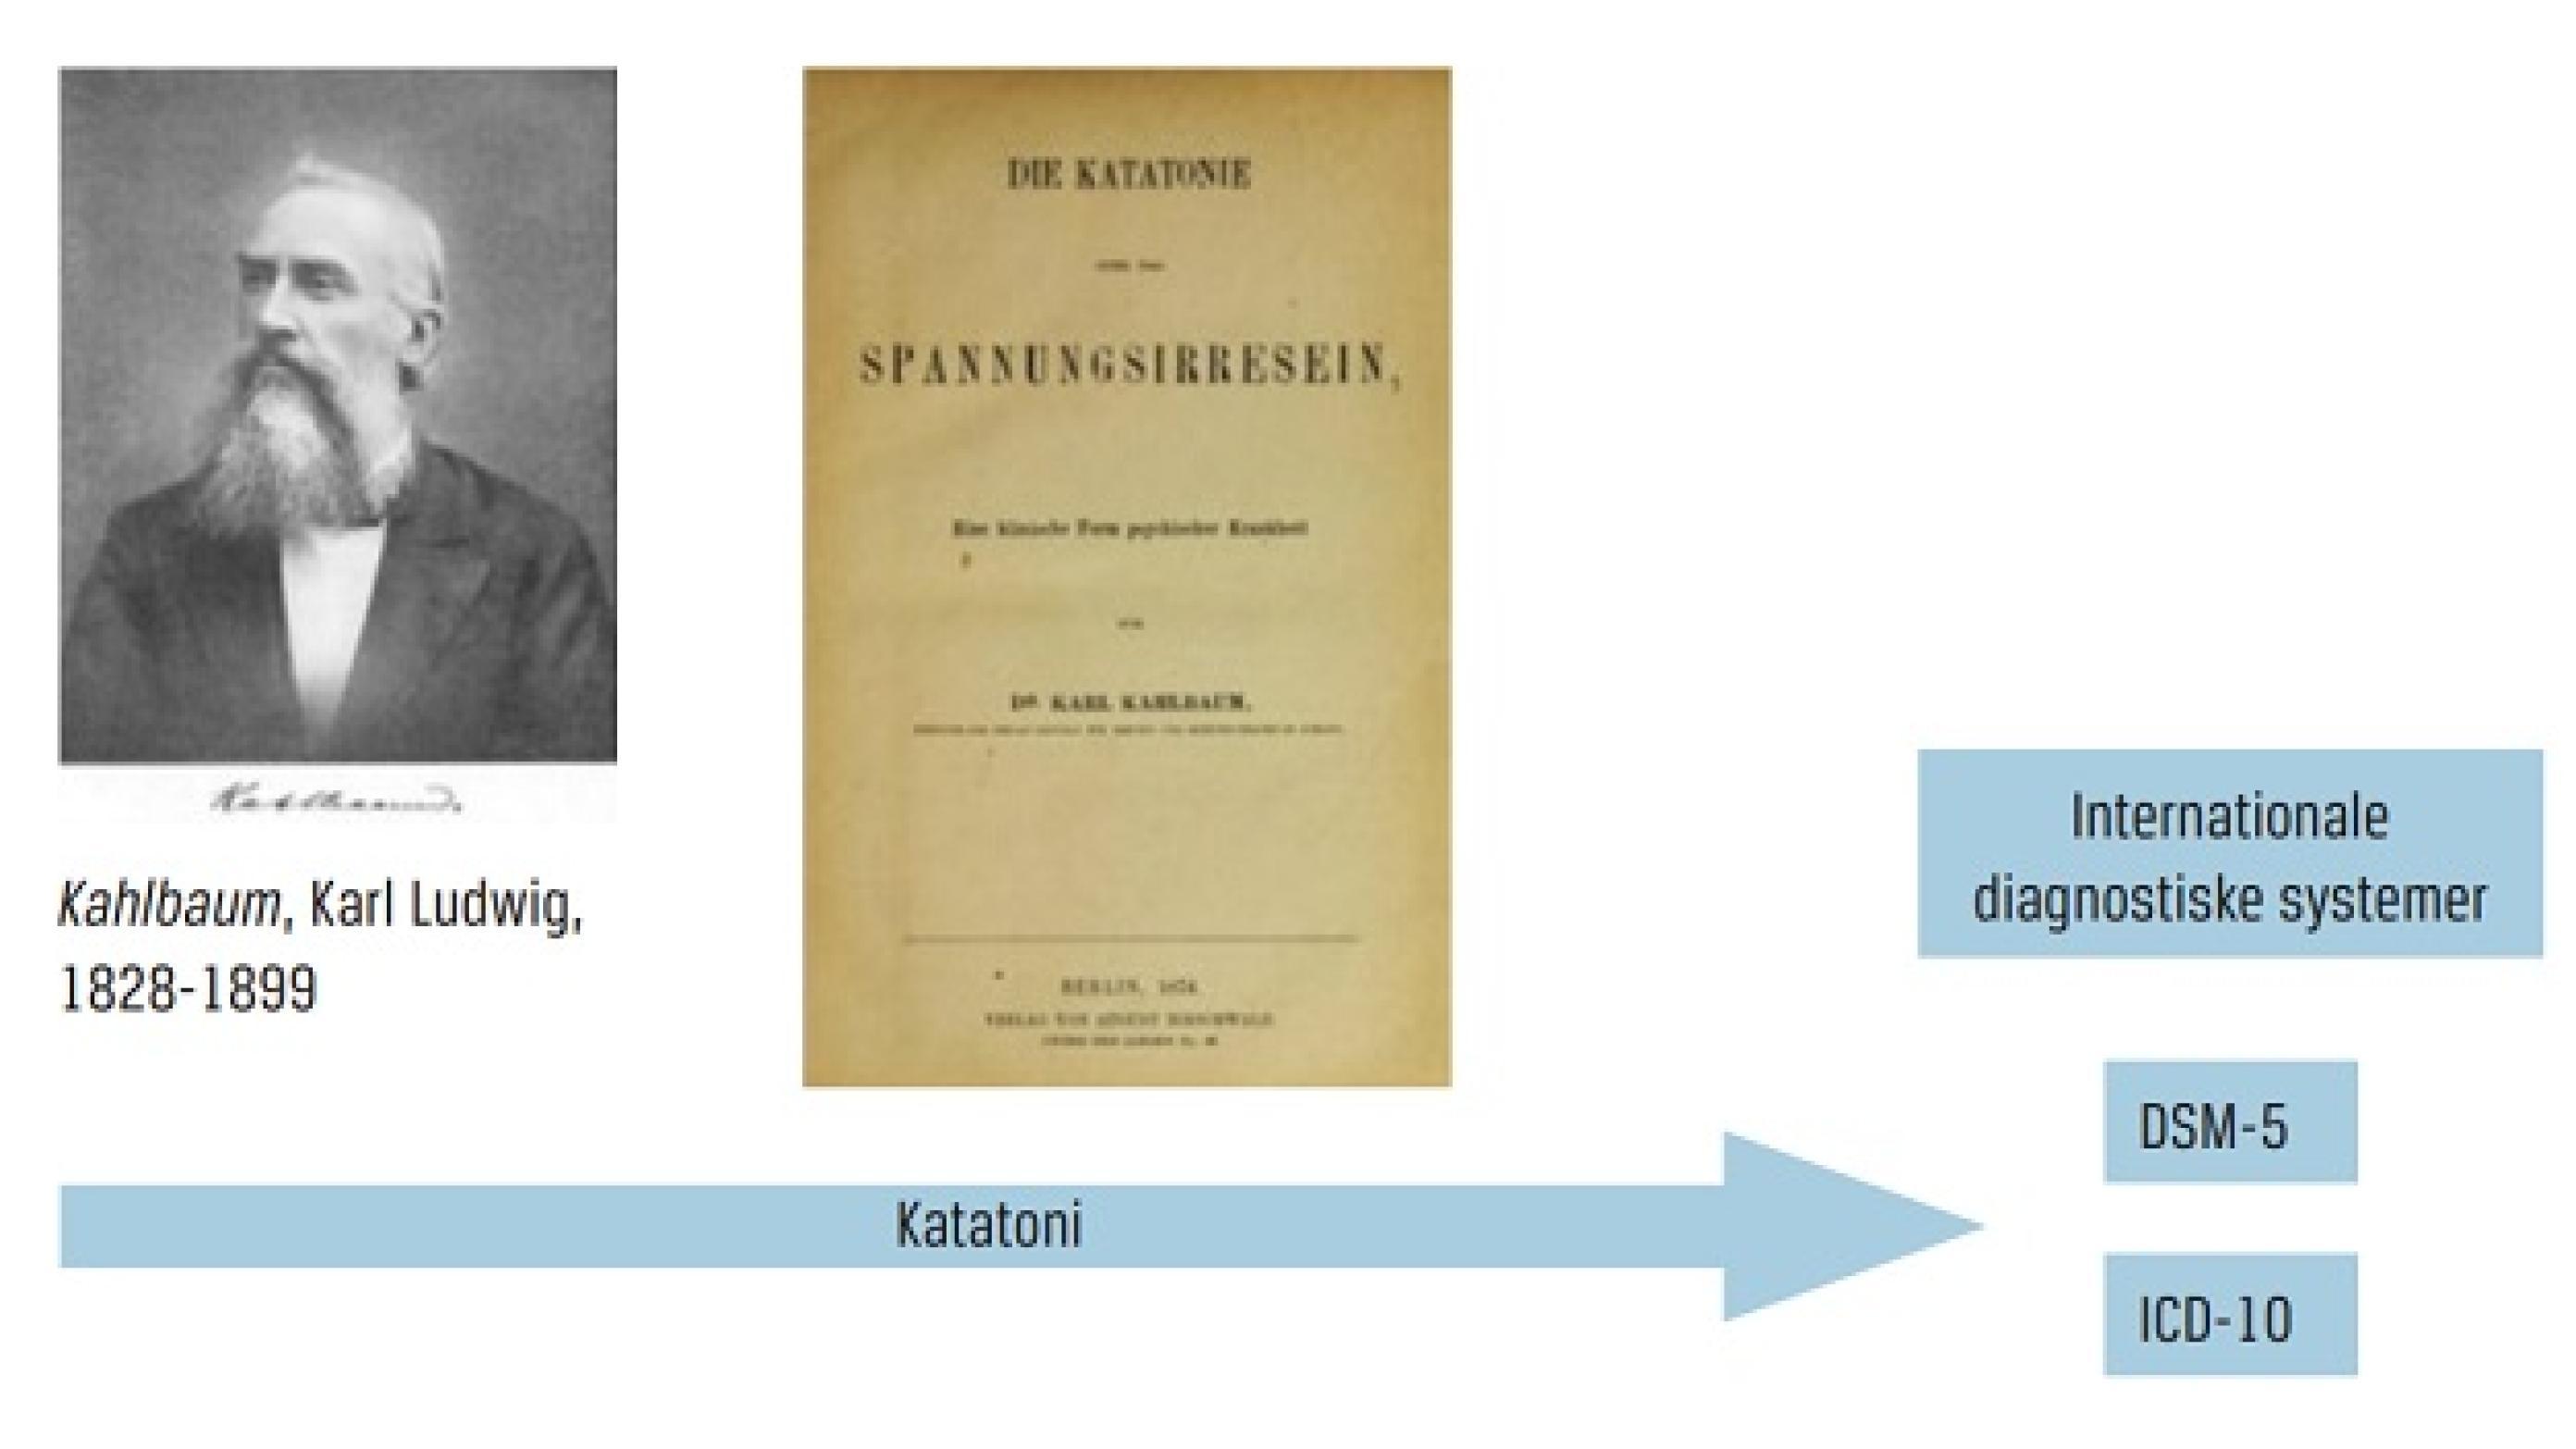 Karl Kahlbaums beskrivelse af katatoni i værket Die Katatonie i 1874 er tilsyneladende mere præcis end Kraepelins perspektiv på katatoni som en type skizofreni.